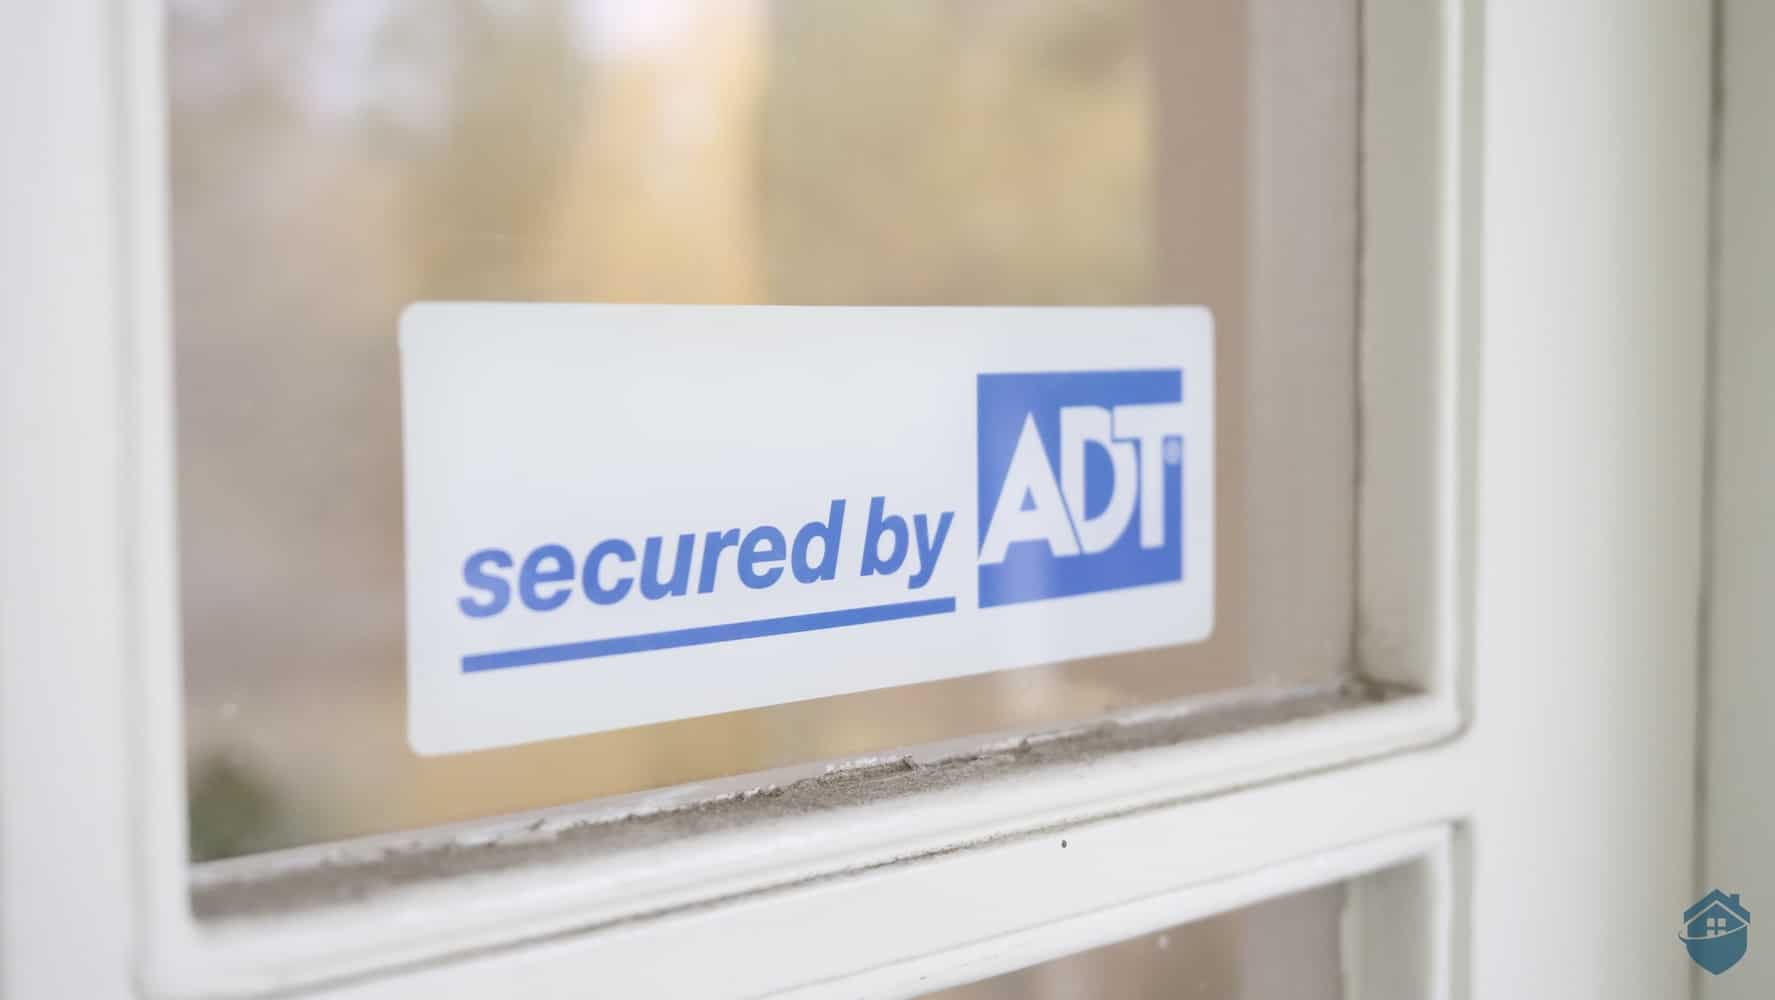 Brink's ADT Simply Safe Home Security Stickers Window/Door Decals yard sign 